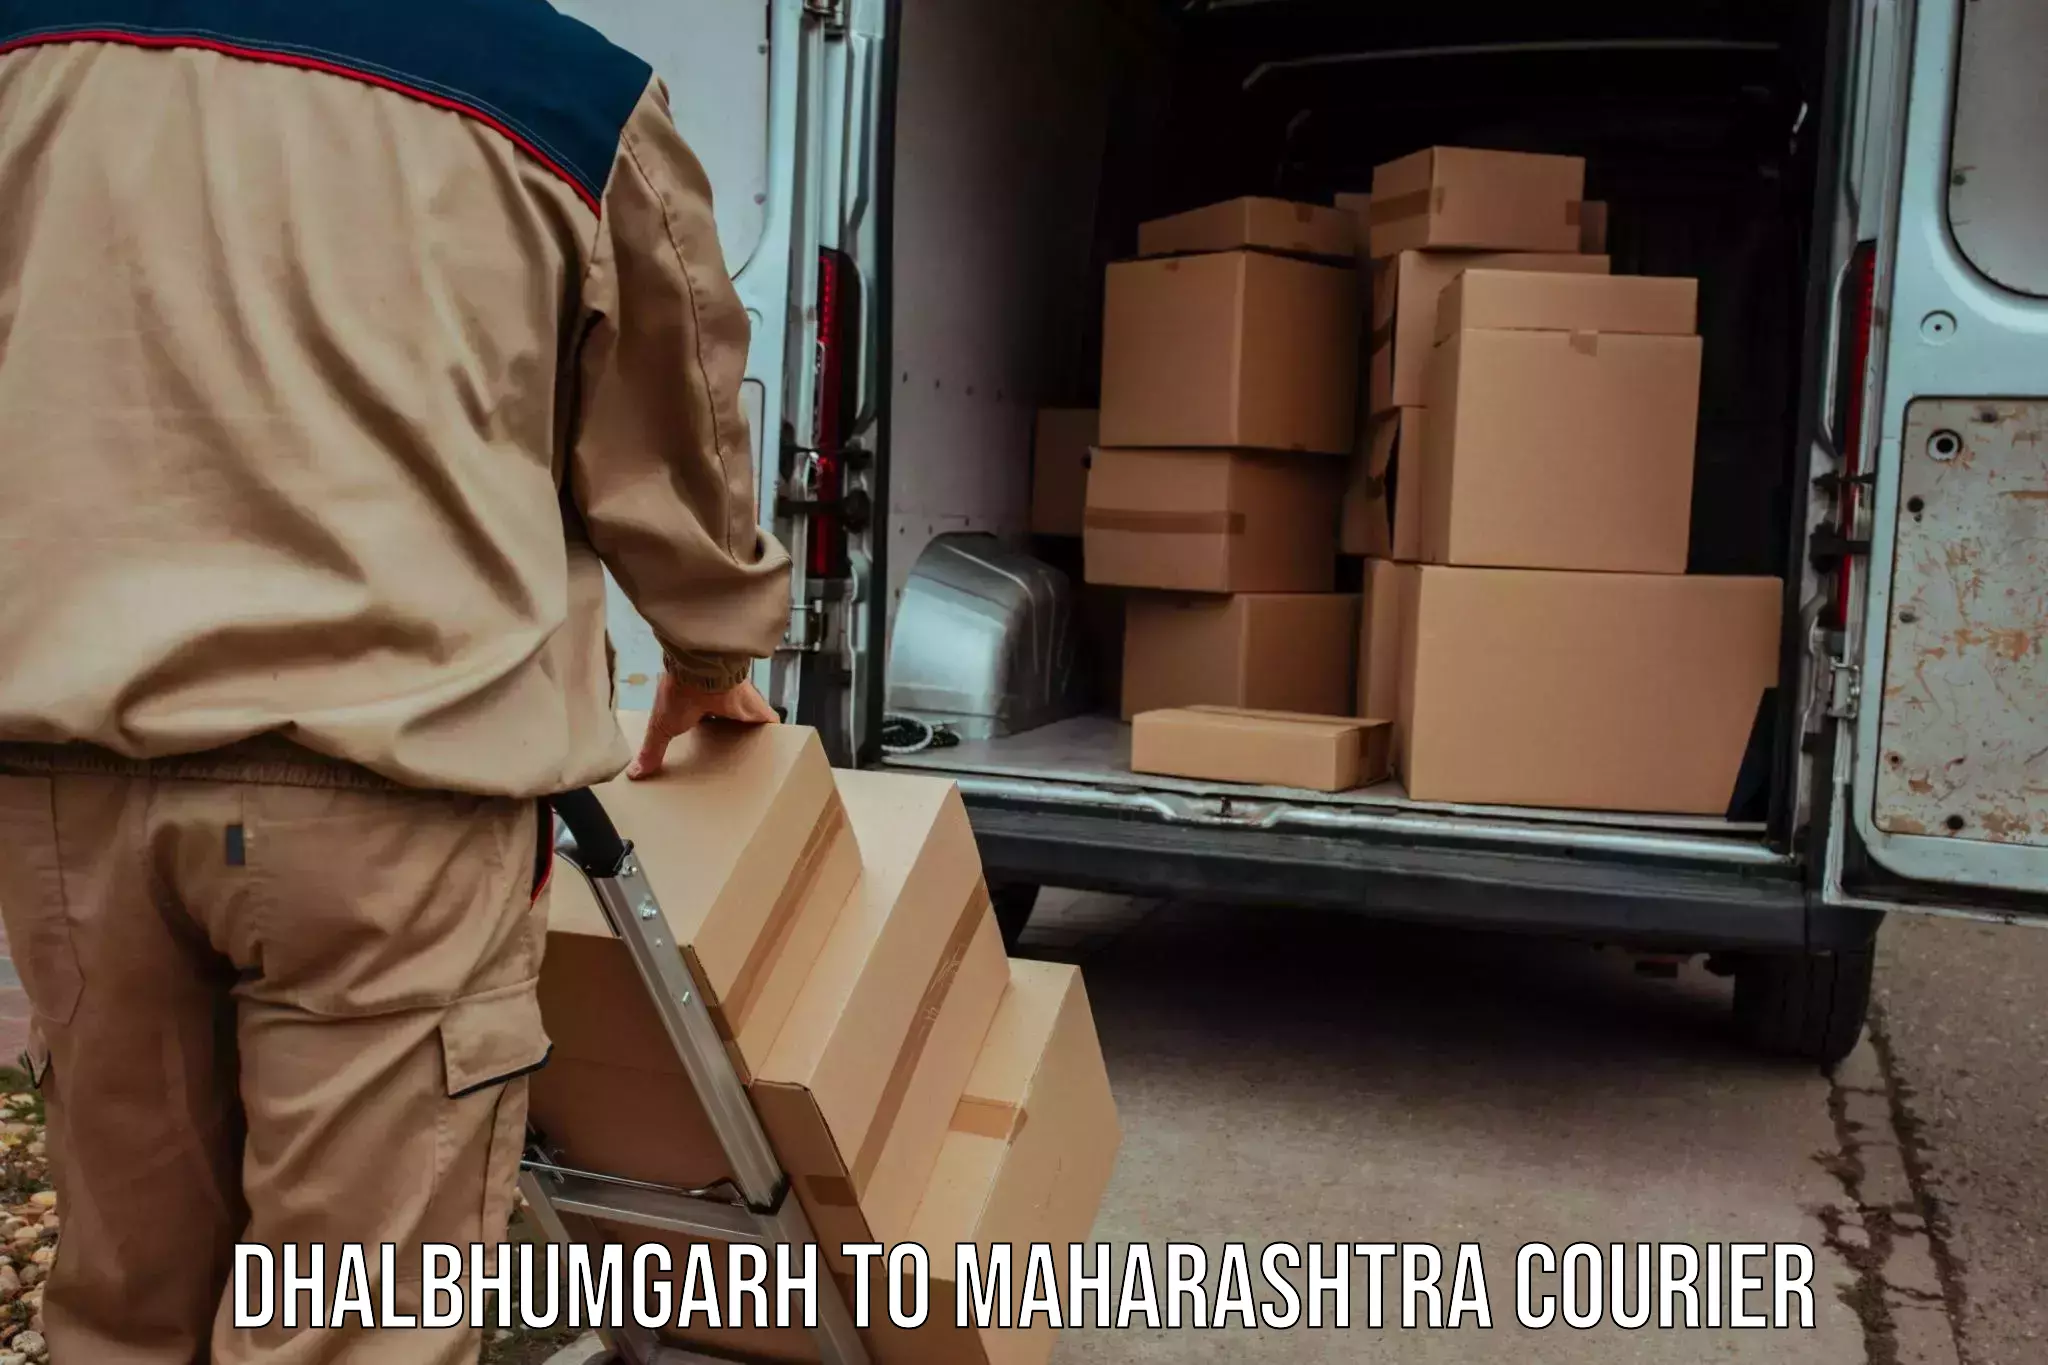 High-capacity parcel service Dhalbhumgarh to Maharashtra